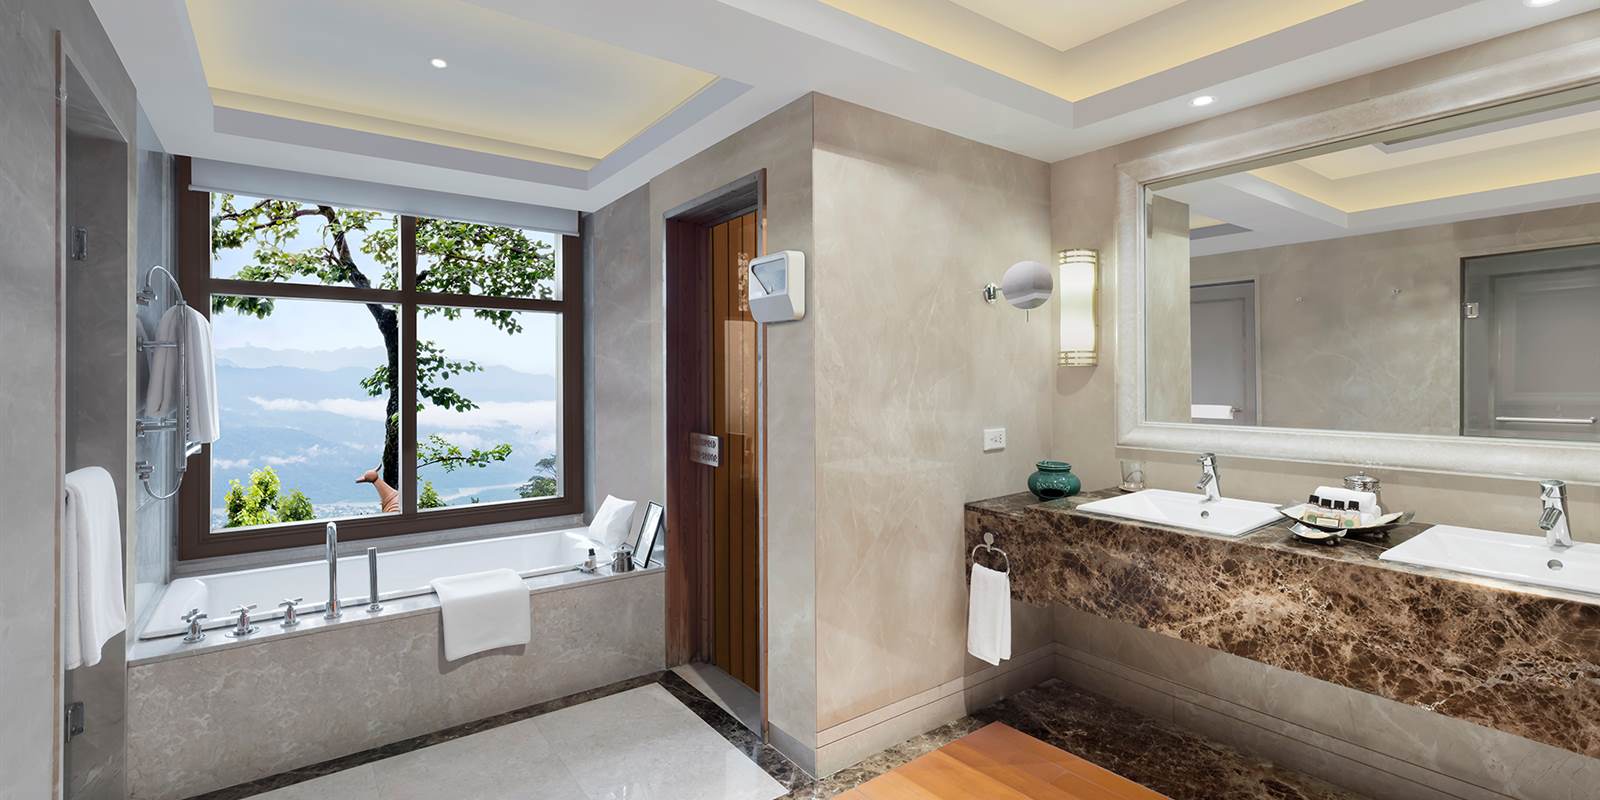 Villa Room with Bathroom in Rishikesh, India